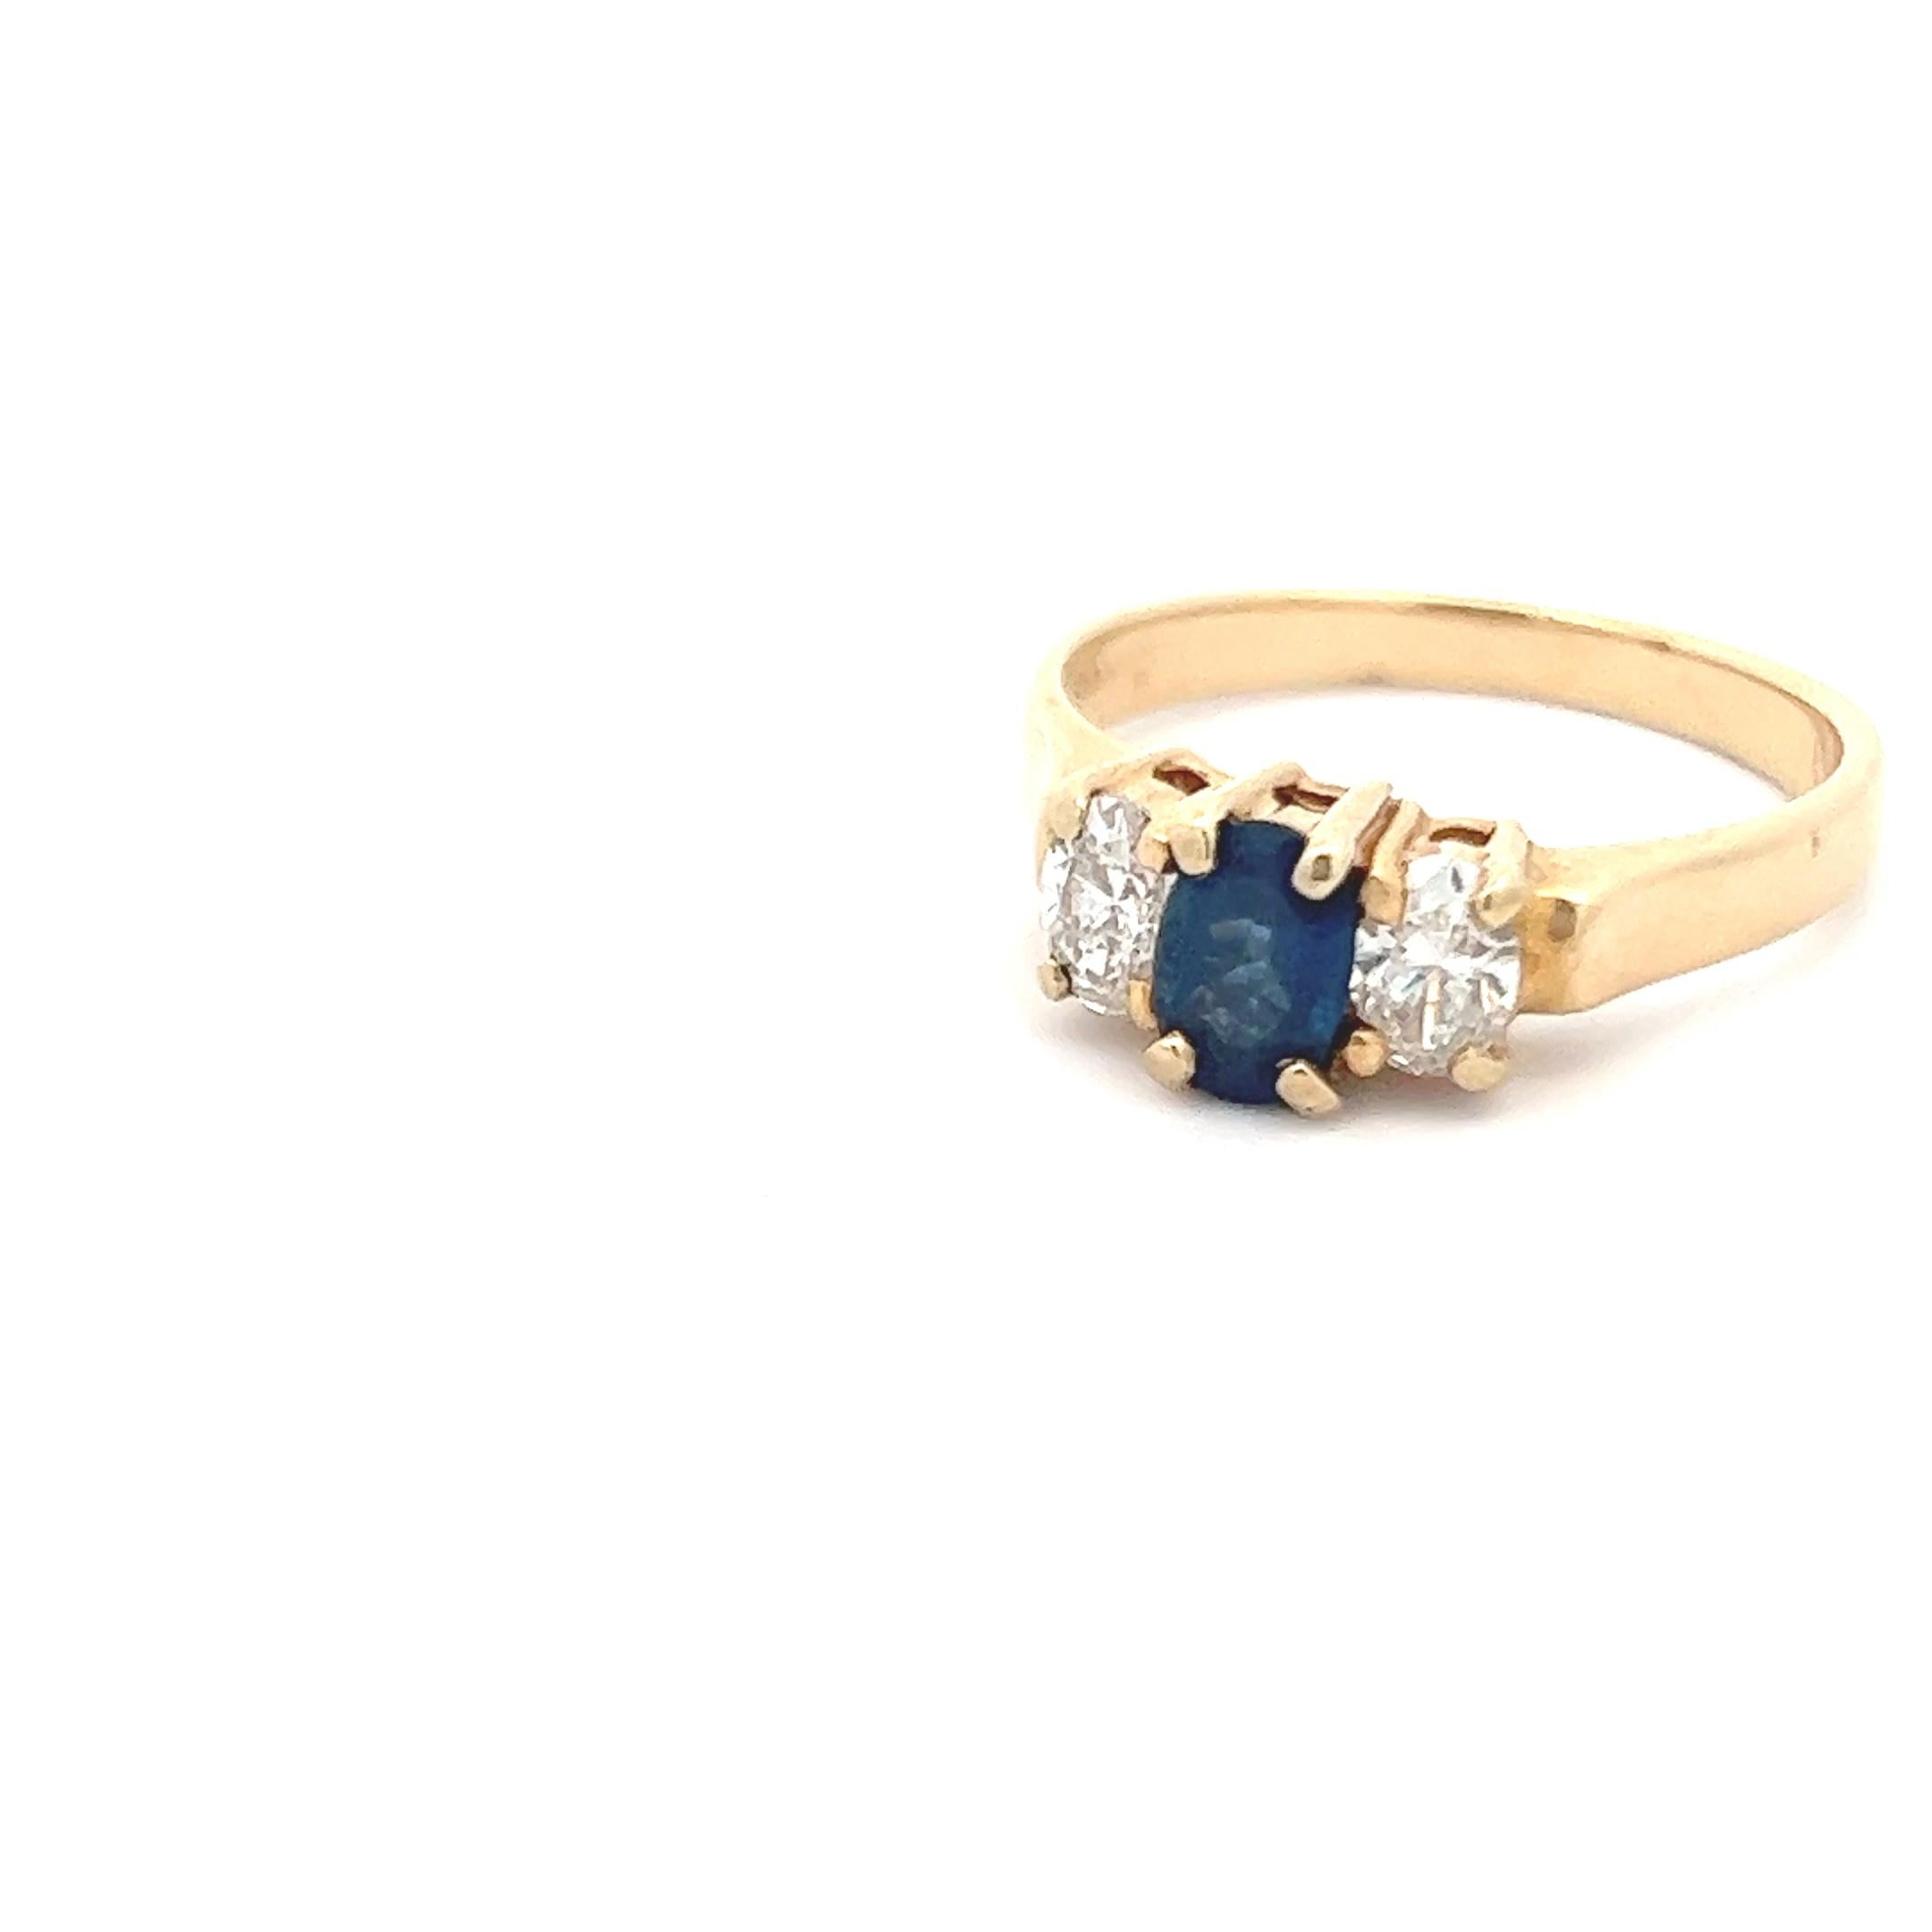 Dieser moderne Ring aus 14 Karat Gelbgold ist mit Diamanten und Saphiren verziert. Der Ring zeigt ein 3-Stein-Ring-Design mit Diamanten auf den Schultern und einem Saphir in der Mitte. Obwohl das Design traditionell ist, ist der Look kühn, da der